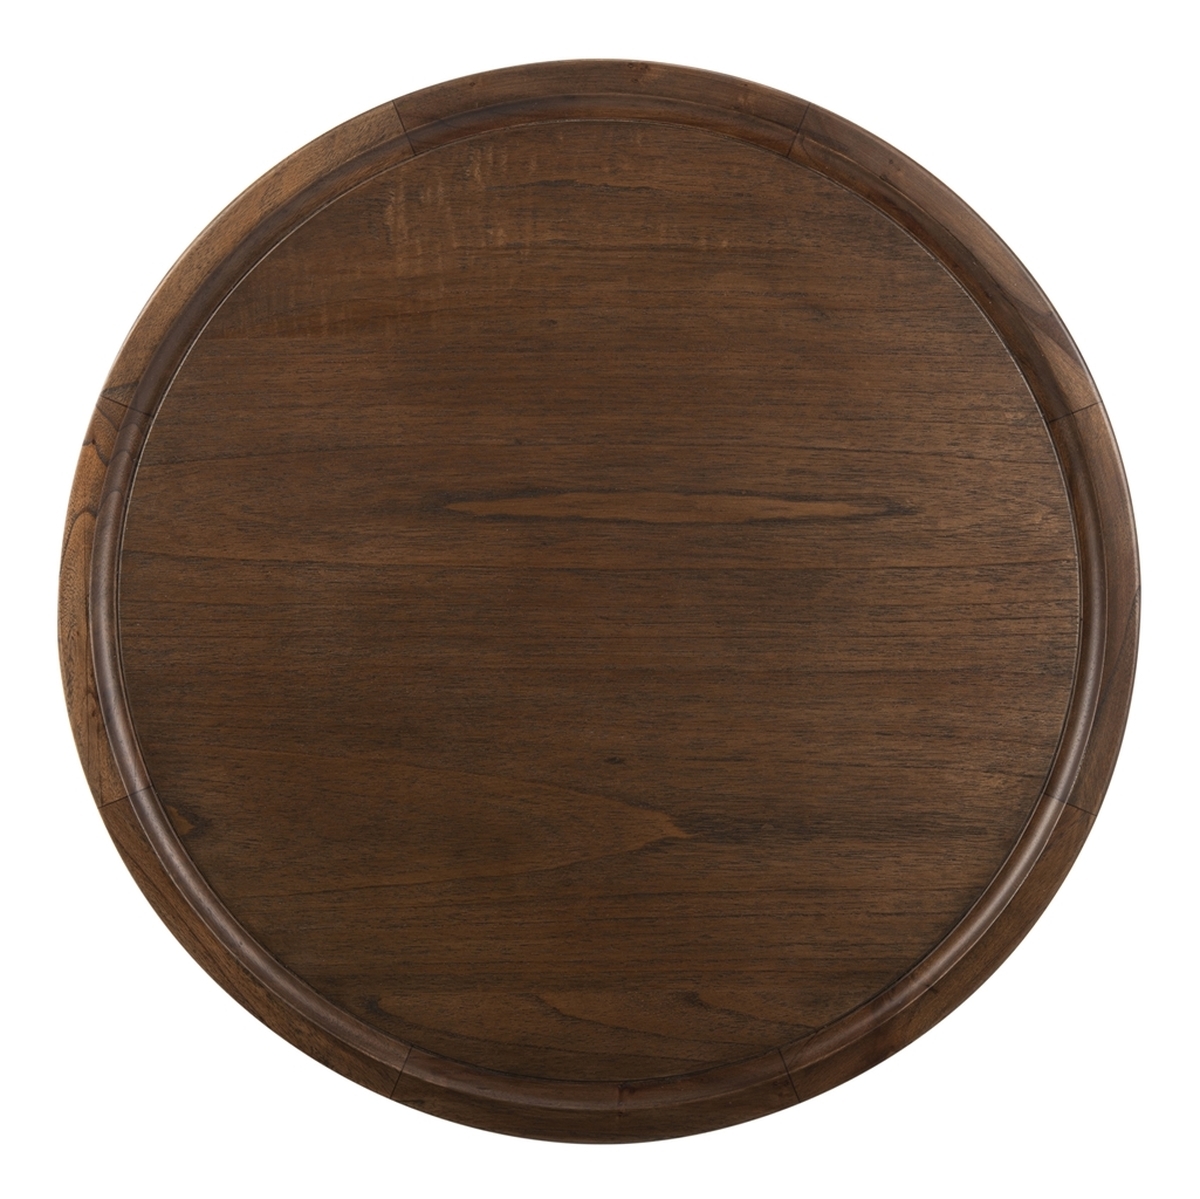 Devin Round Pedestal Coffee Table, Dark Walnut - Image 2